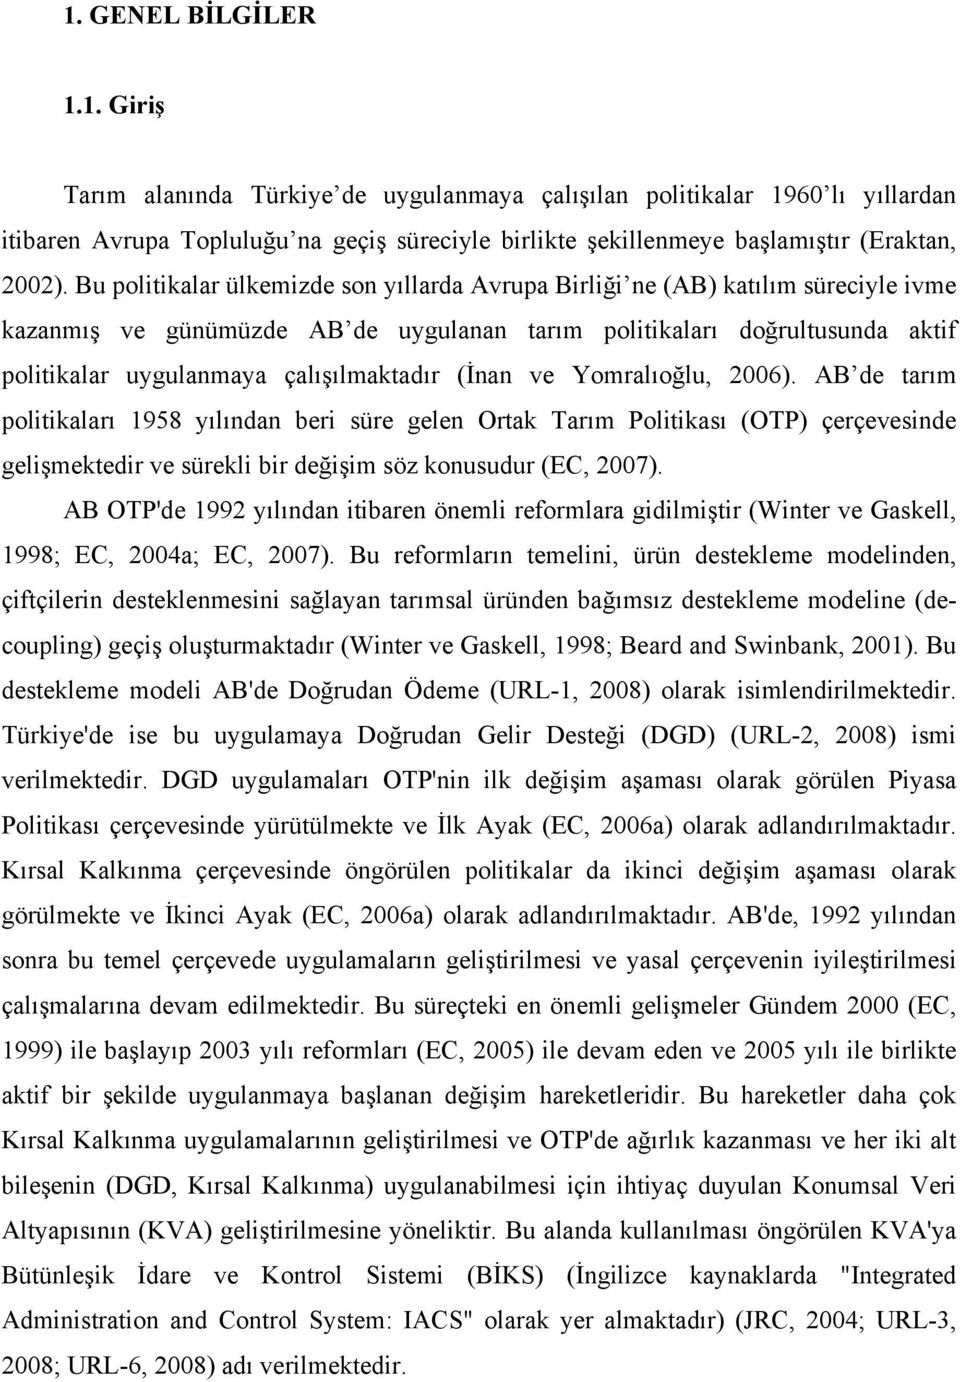 çalışılmaktadır (İnan ve Yomralıoğlu, 2006).